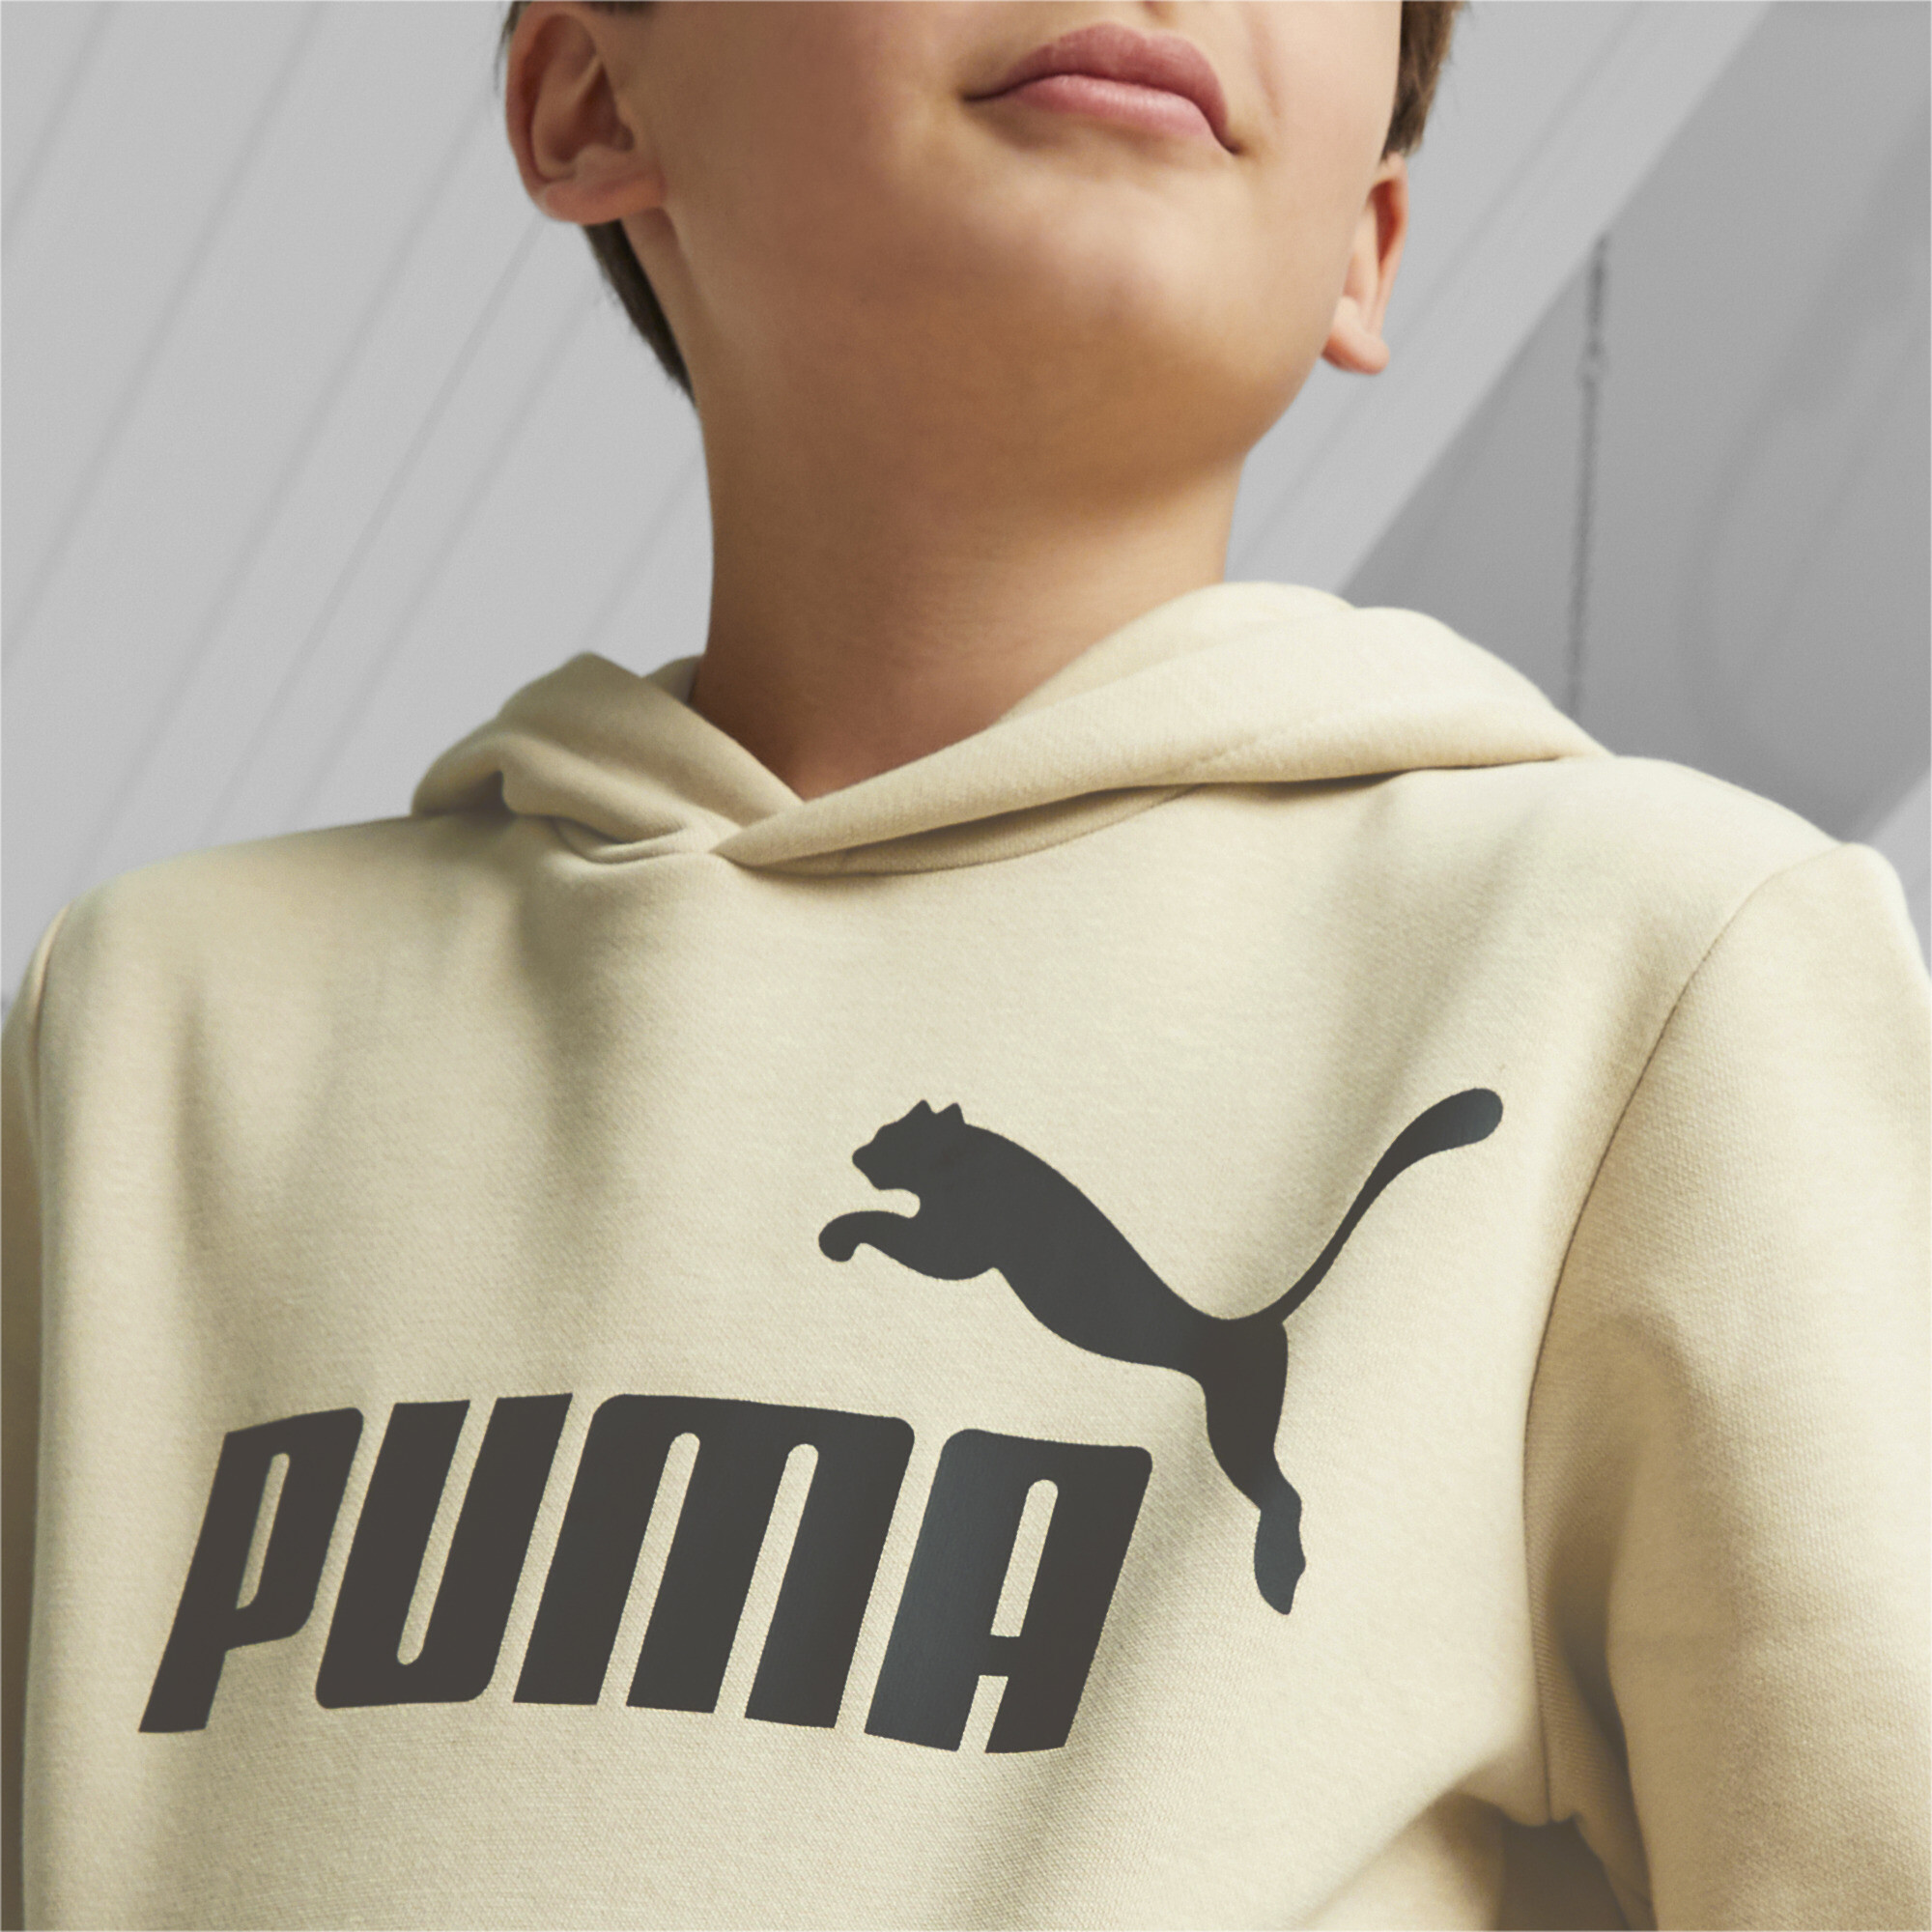 Men's Puma Essentials Big Logo Youth Hoodie, Beige, Size 15-16Y, Clothing